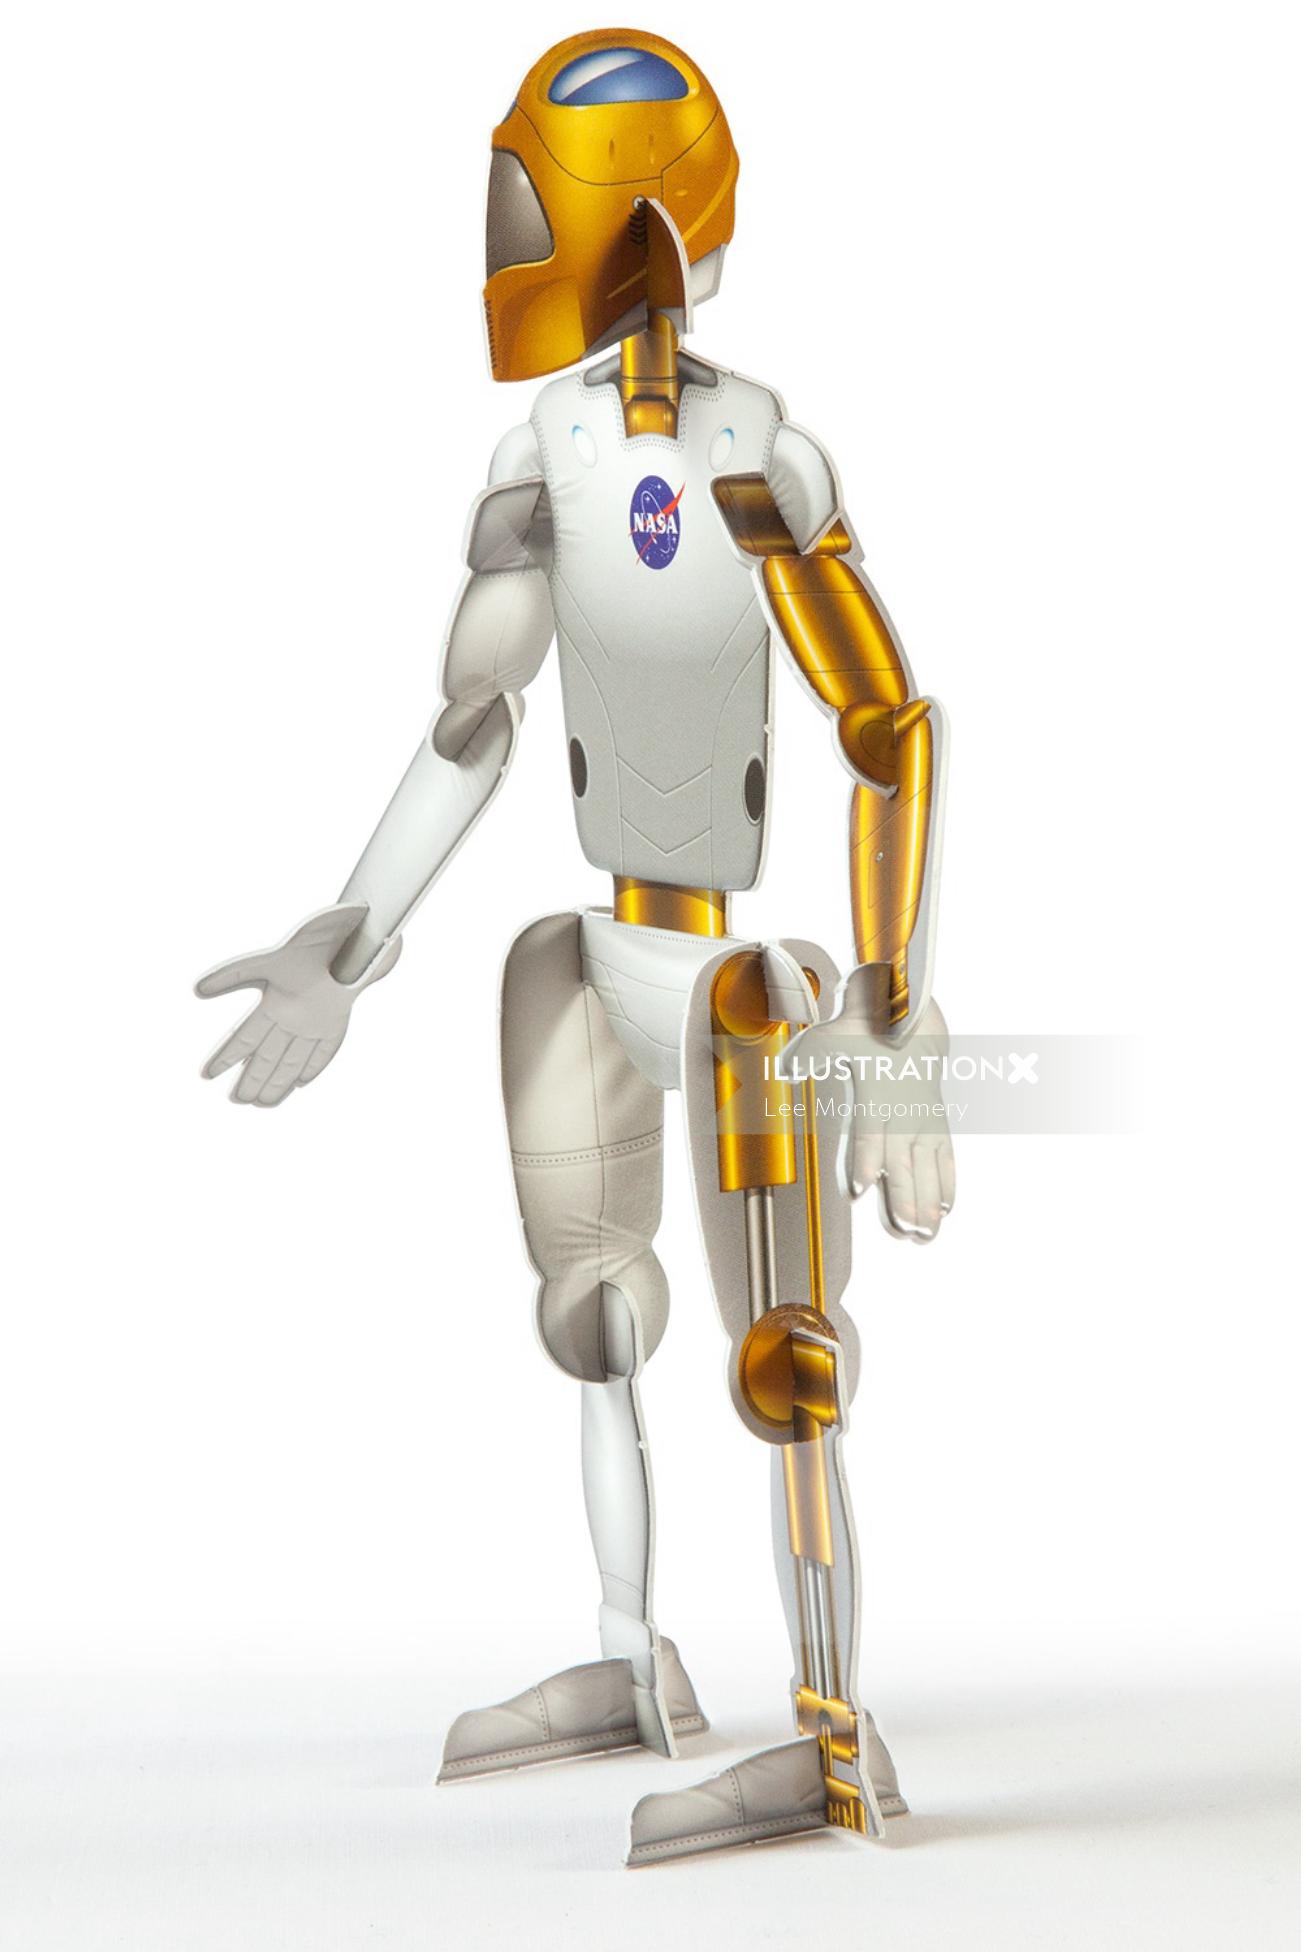 NASAロボットモデルのイラスト